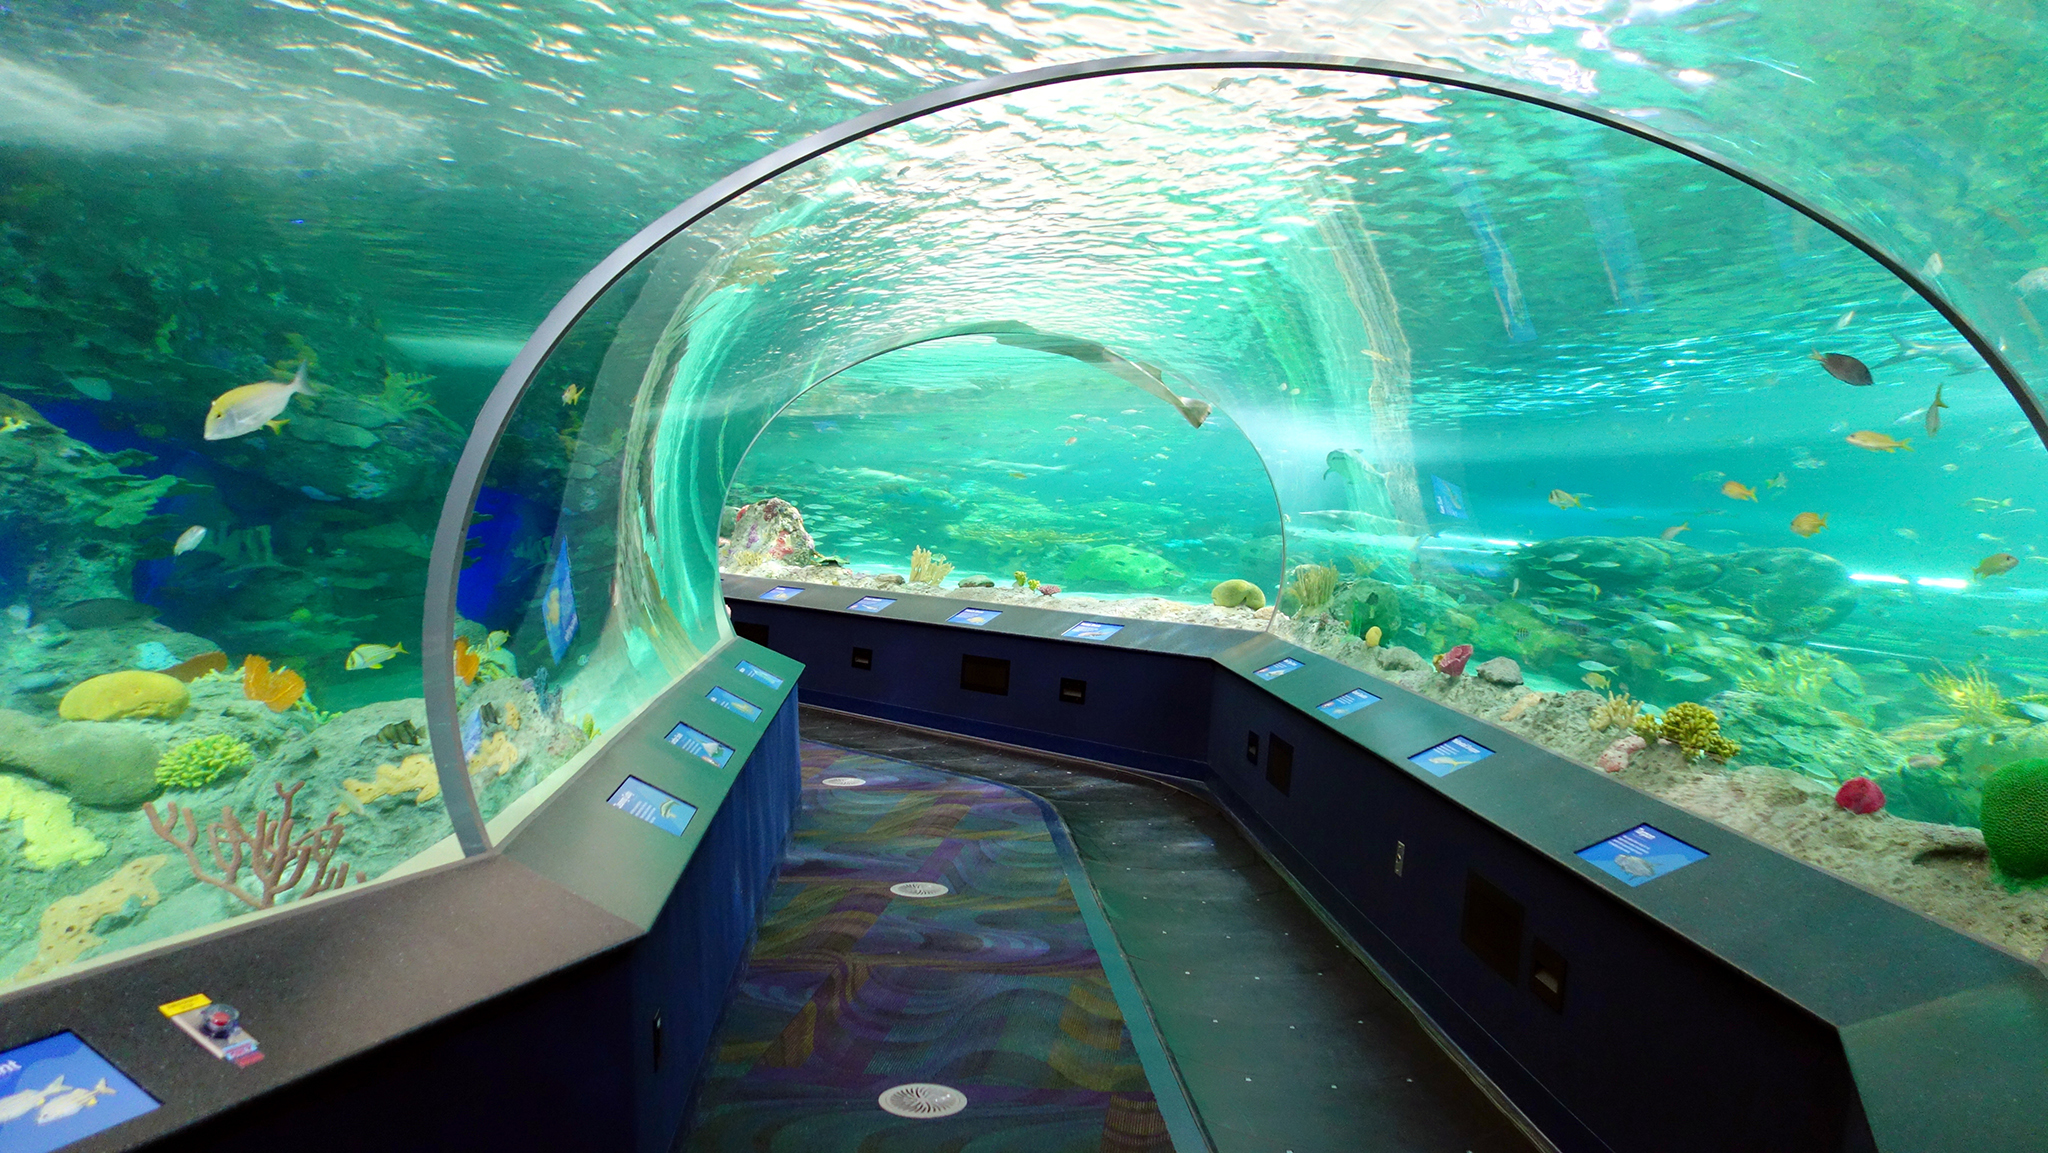 Ripley's Aquarium of Canada - Image